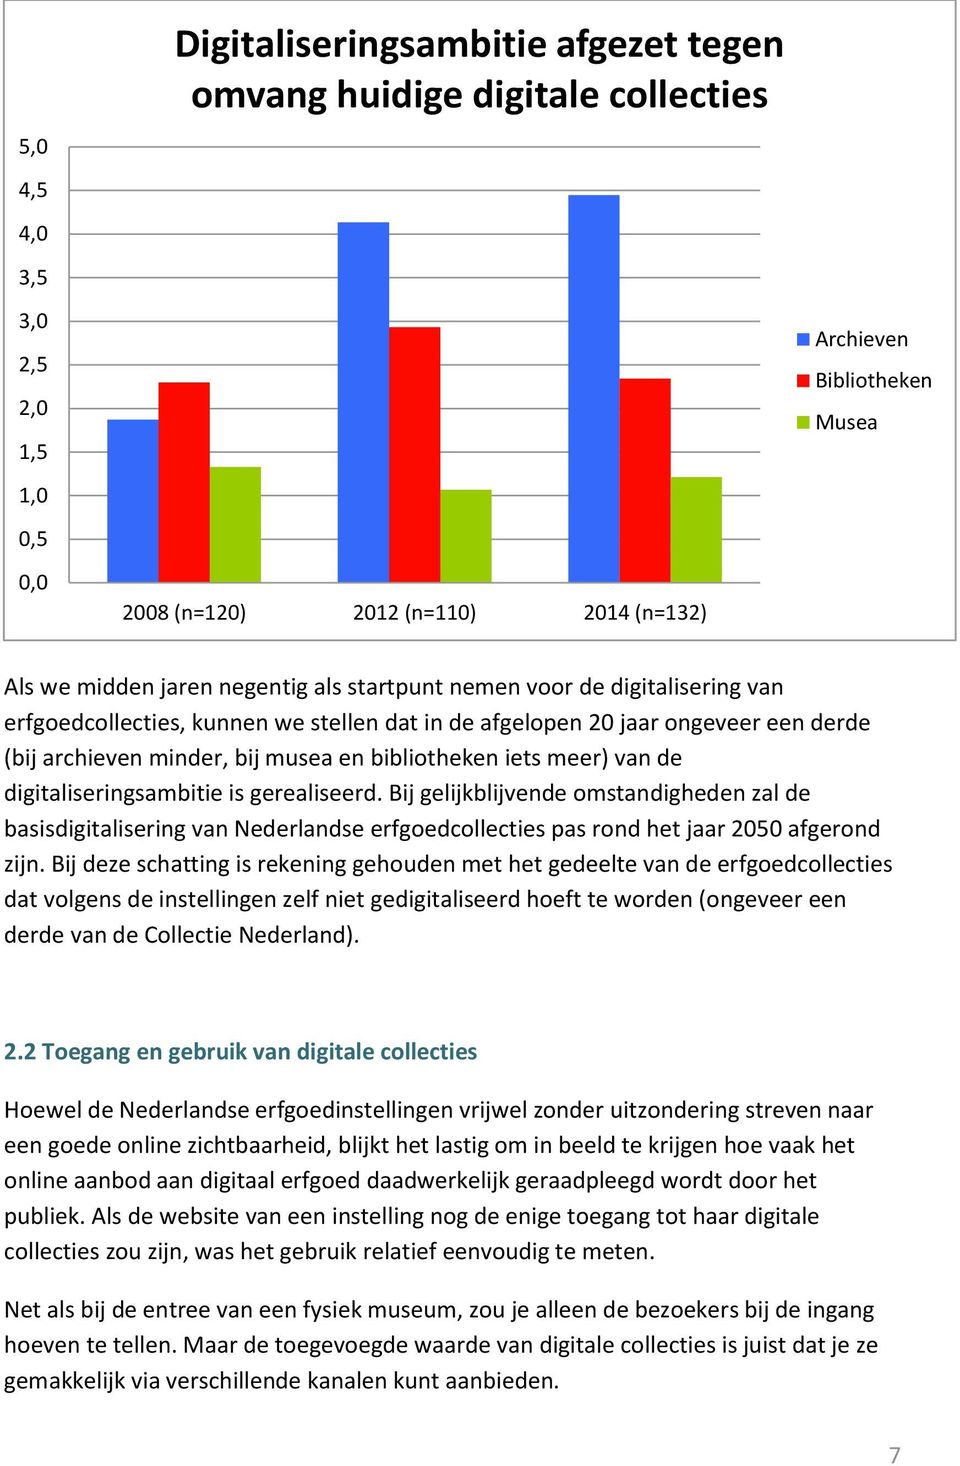 meer) van de digitaliseringsambitie is gerealiseerd. Bij gelijkblijvende omstandigheden zal de basisdigitalisering van Nederlandse erfgoedcollecties pas rond het jaar 2050 afgerond zijn.